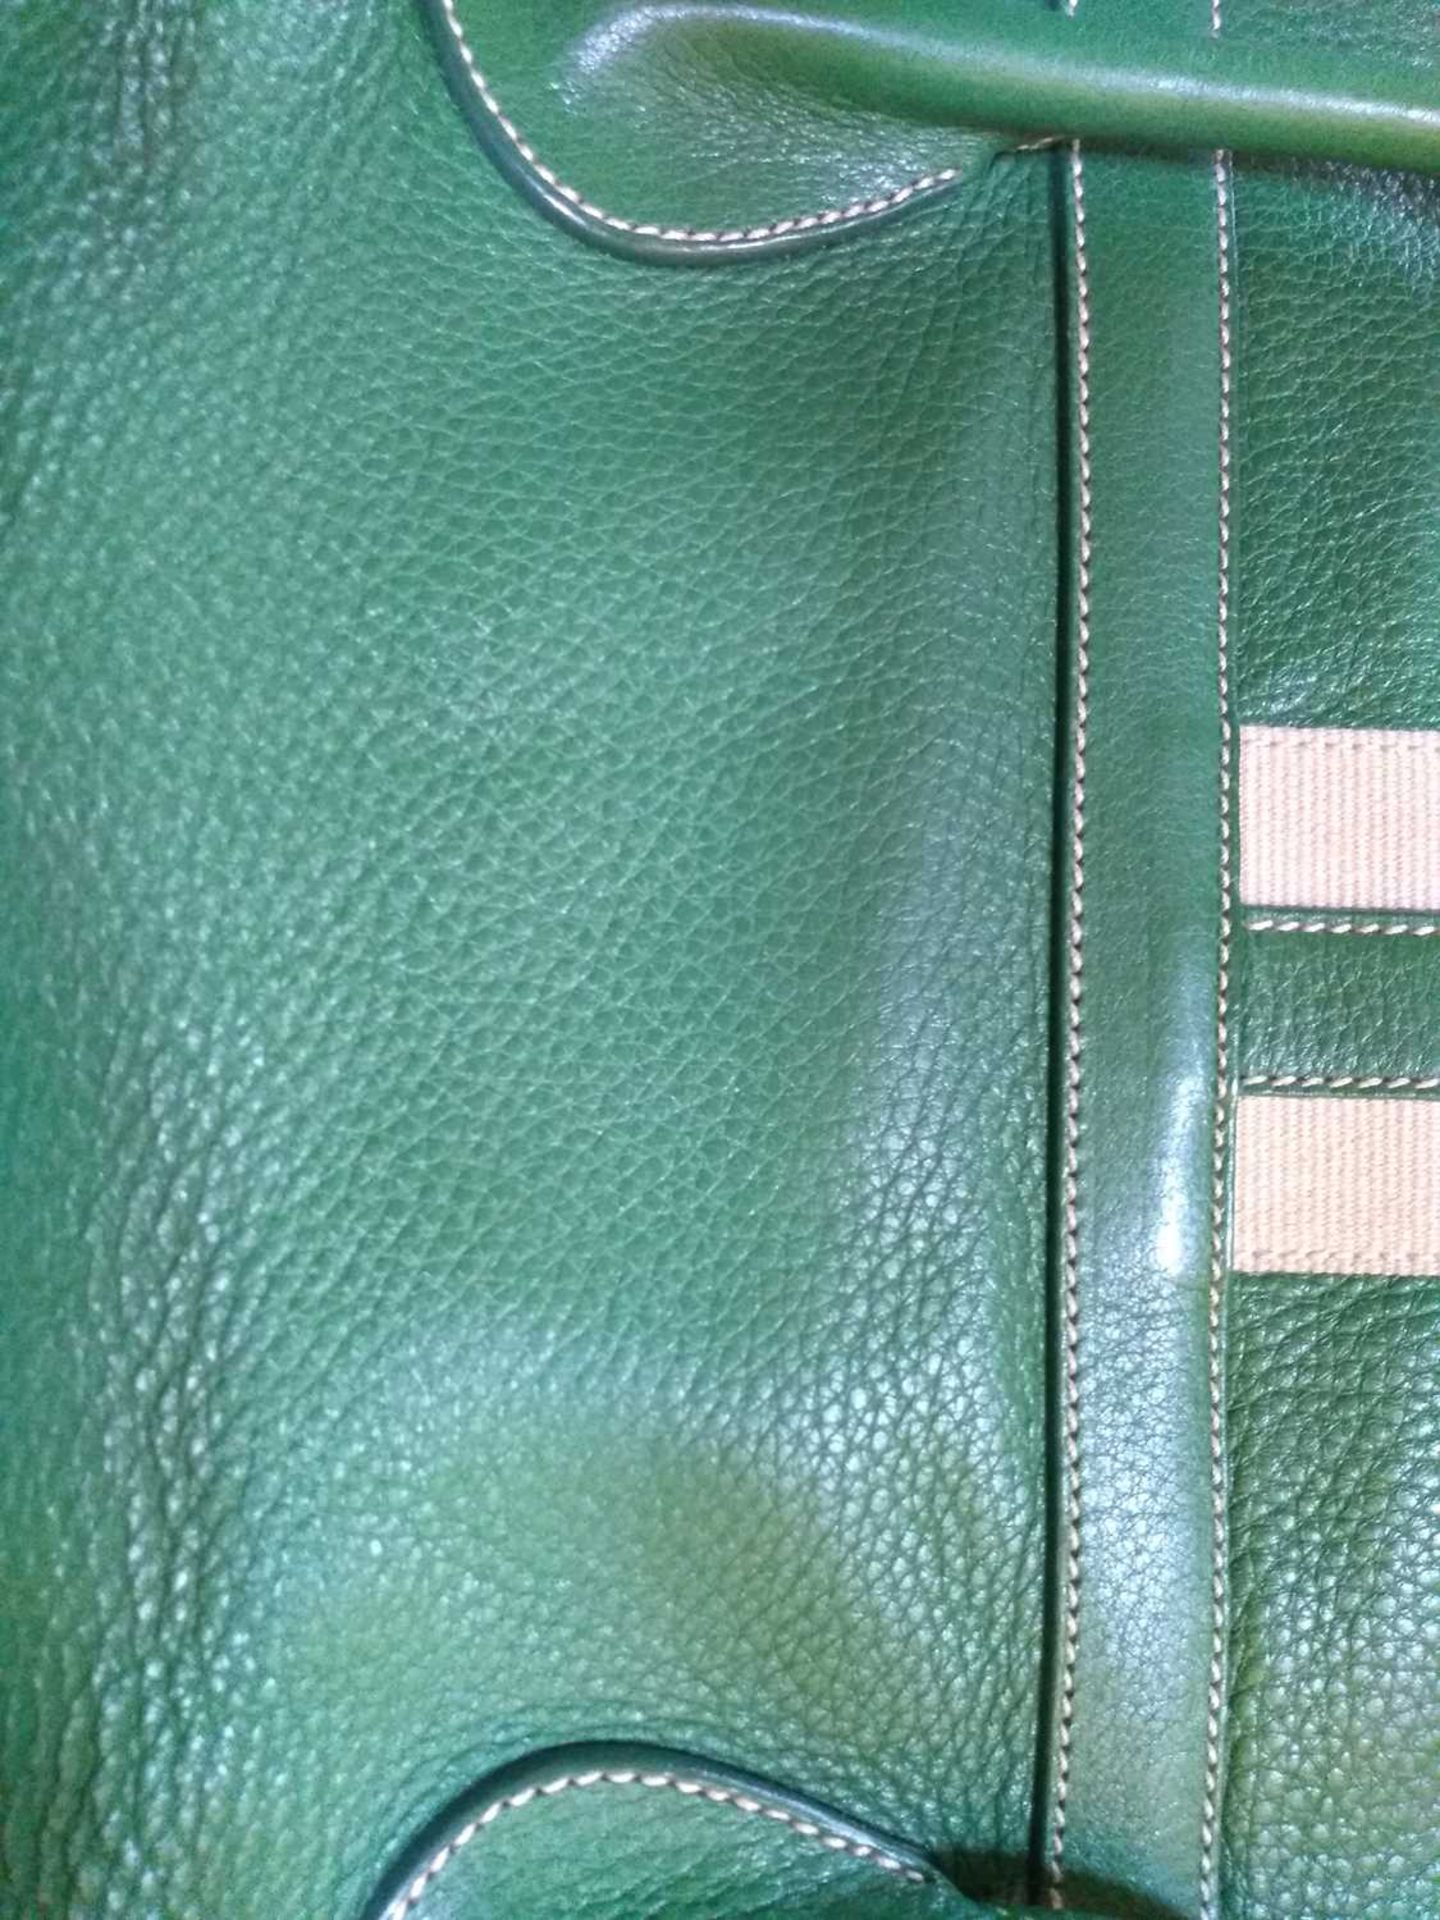 A Prada green leather shoulder bag, - Image 5 of 11